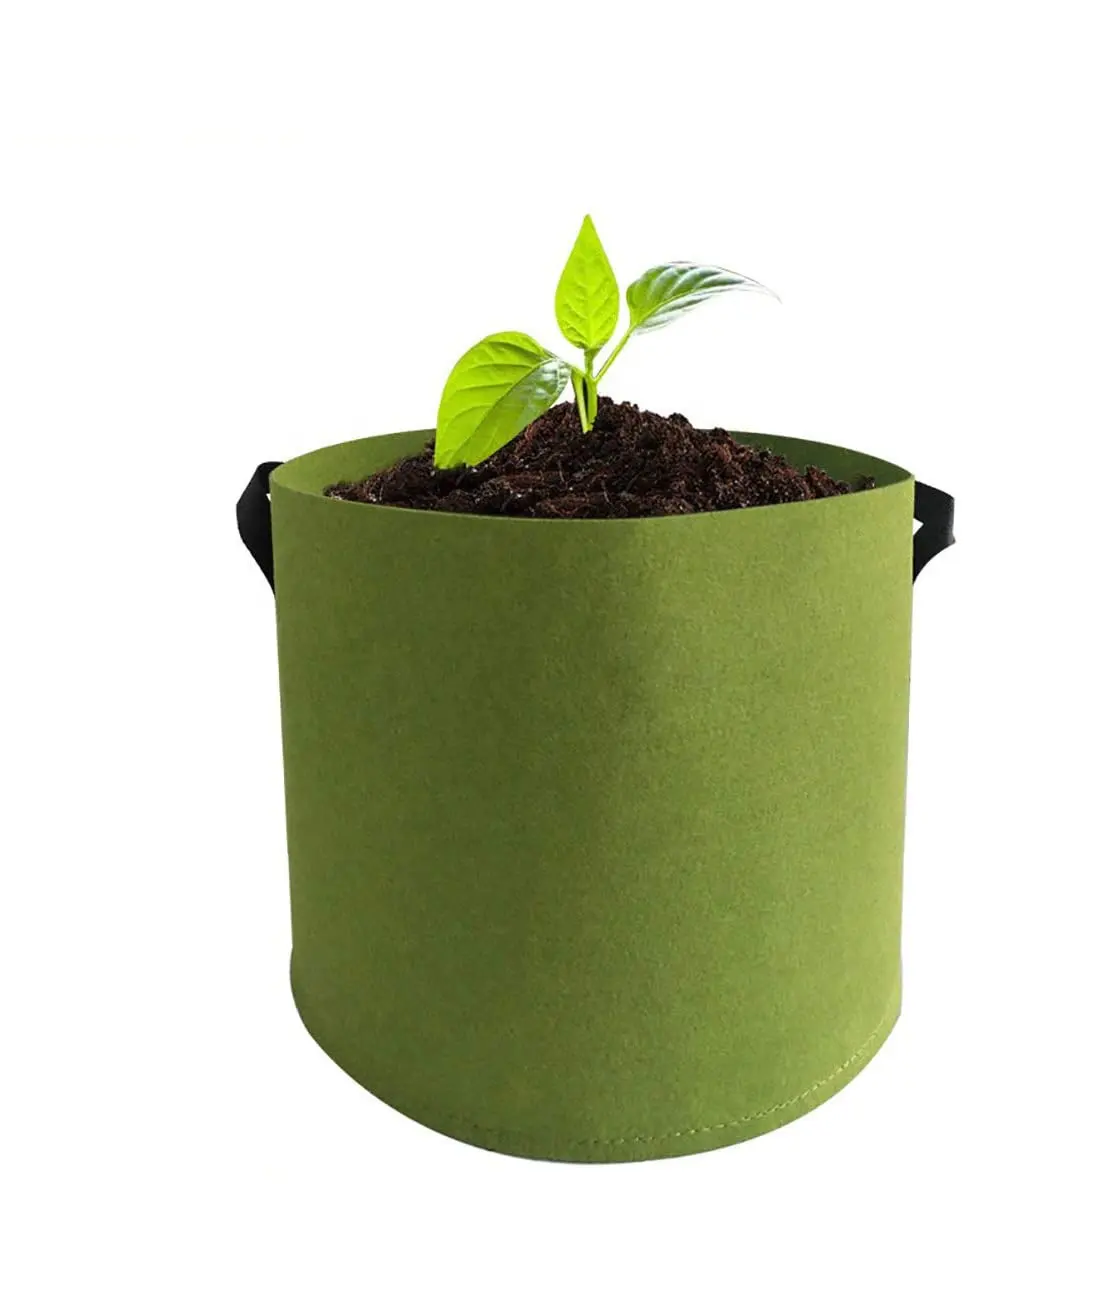 Ucuz fiyat nefes kumaş Pot 5 galon yeşil ev bahçe sebze keçe bitki büyümek çanta patates soğan havuç